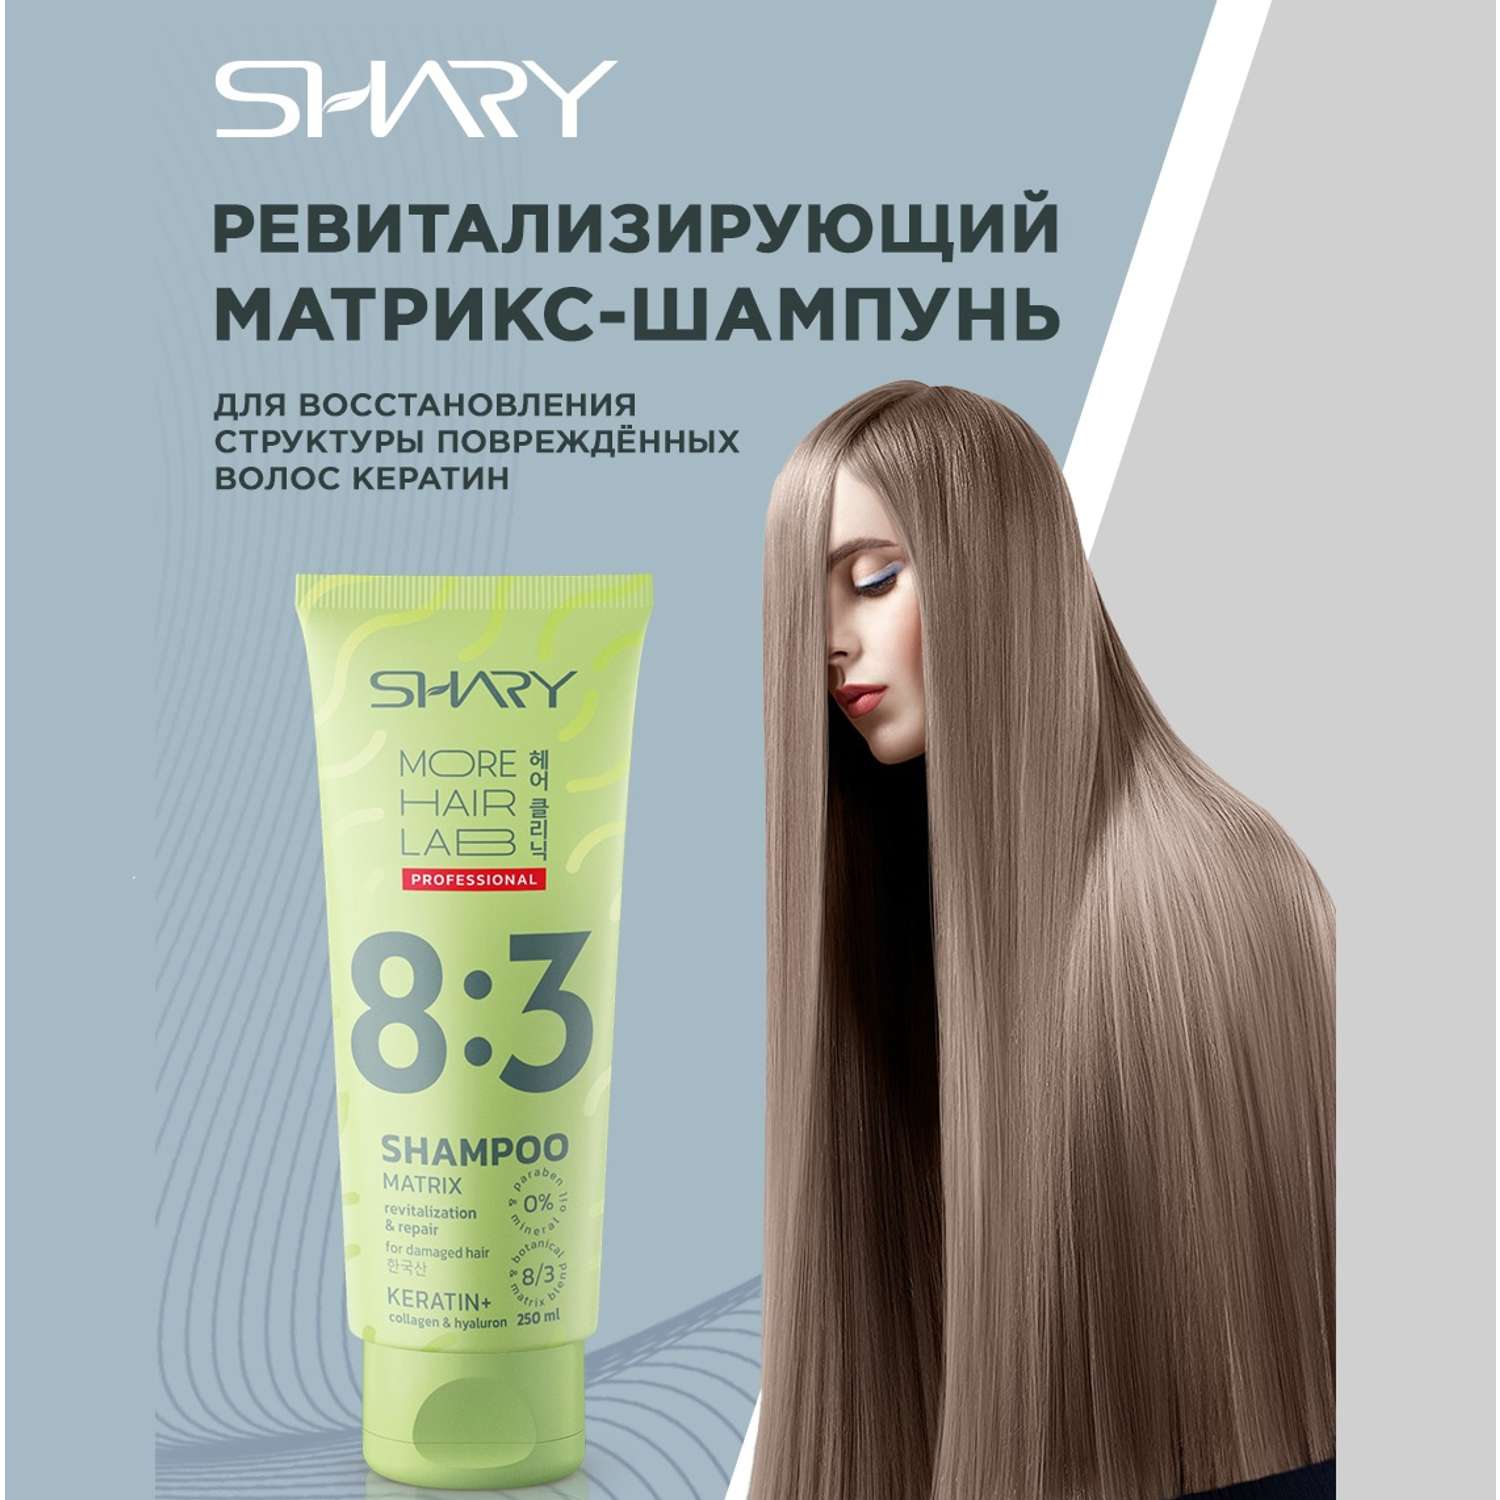 Шампунь SHARY Ревитализирующий для восстановления структуры повреждённых волос Кератин 250 мл - фото 1